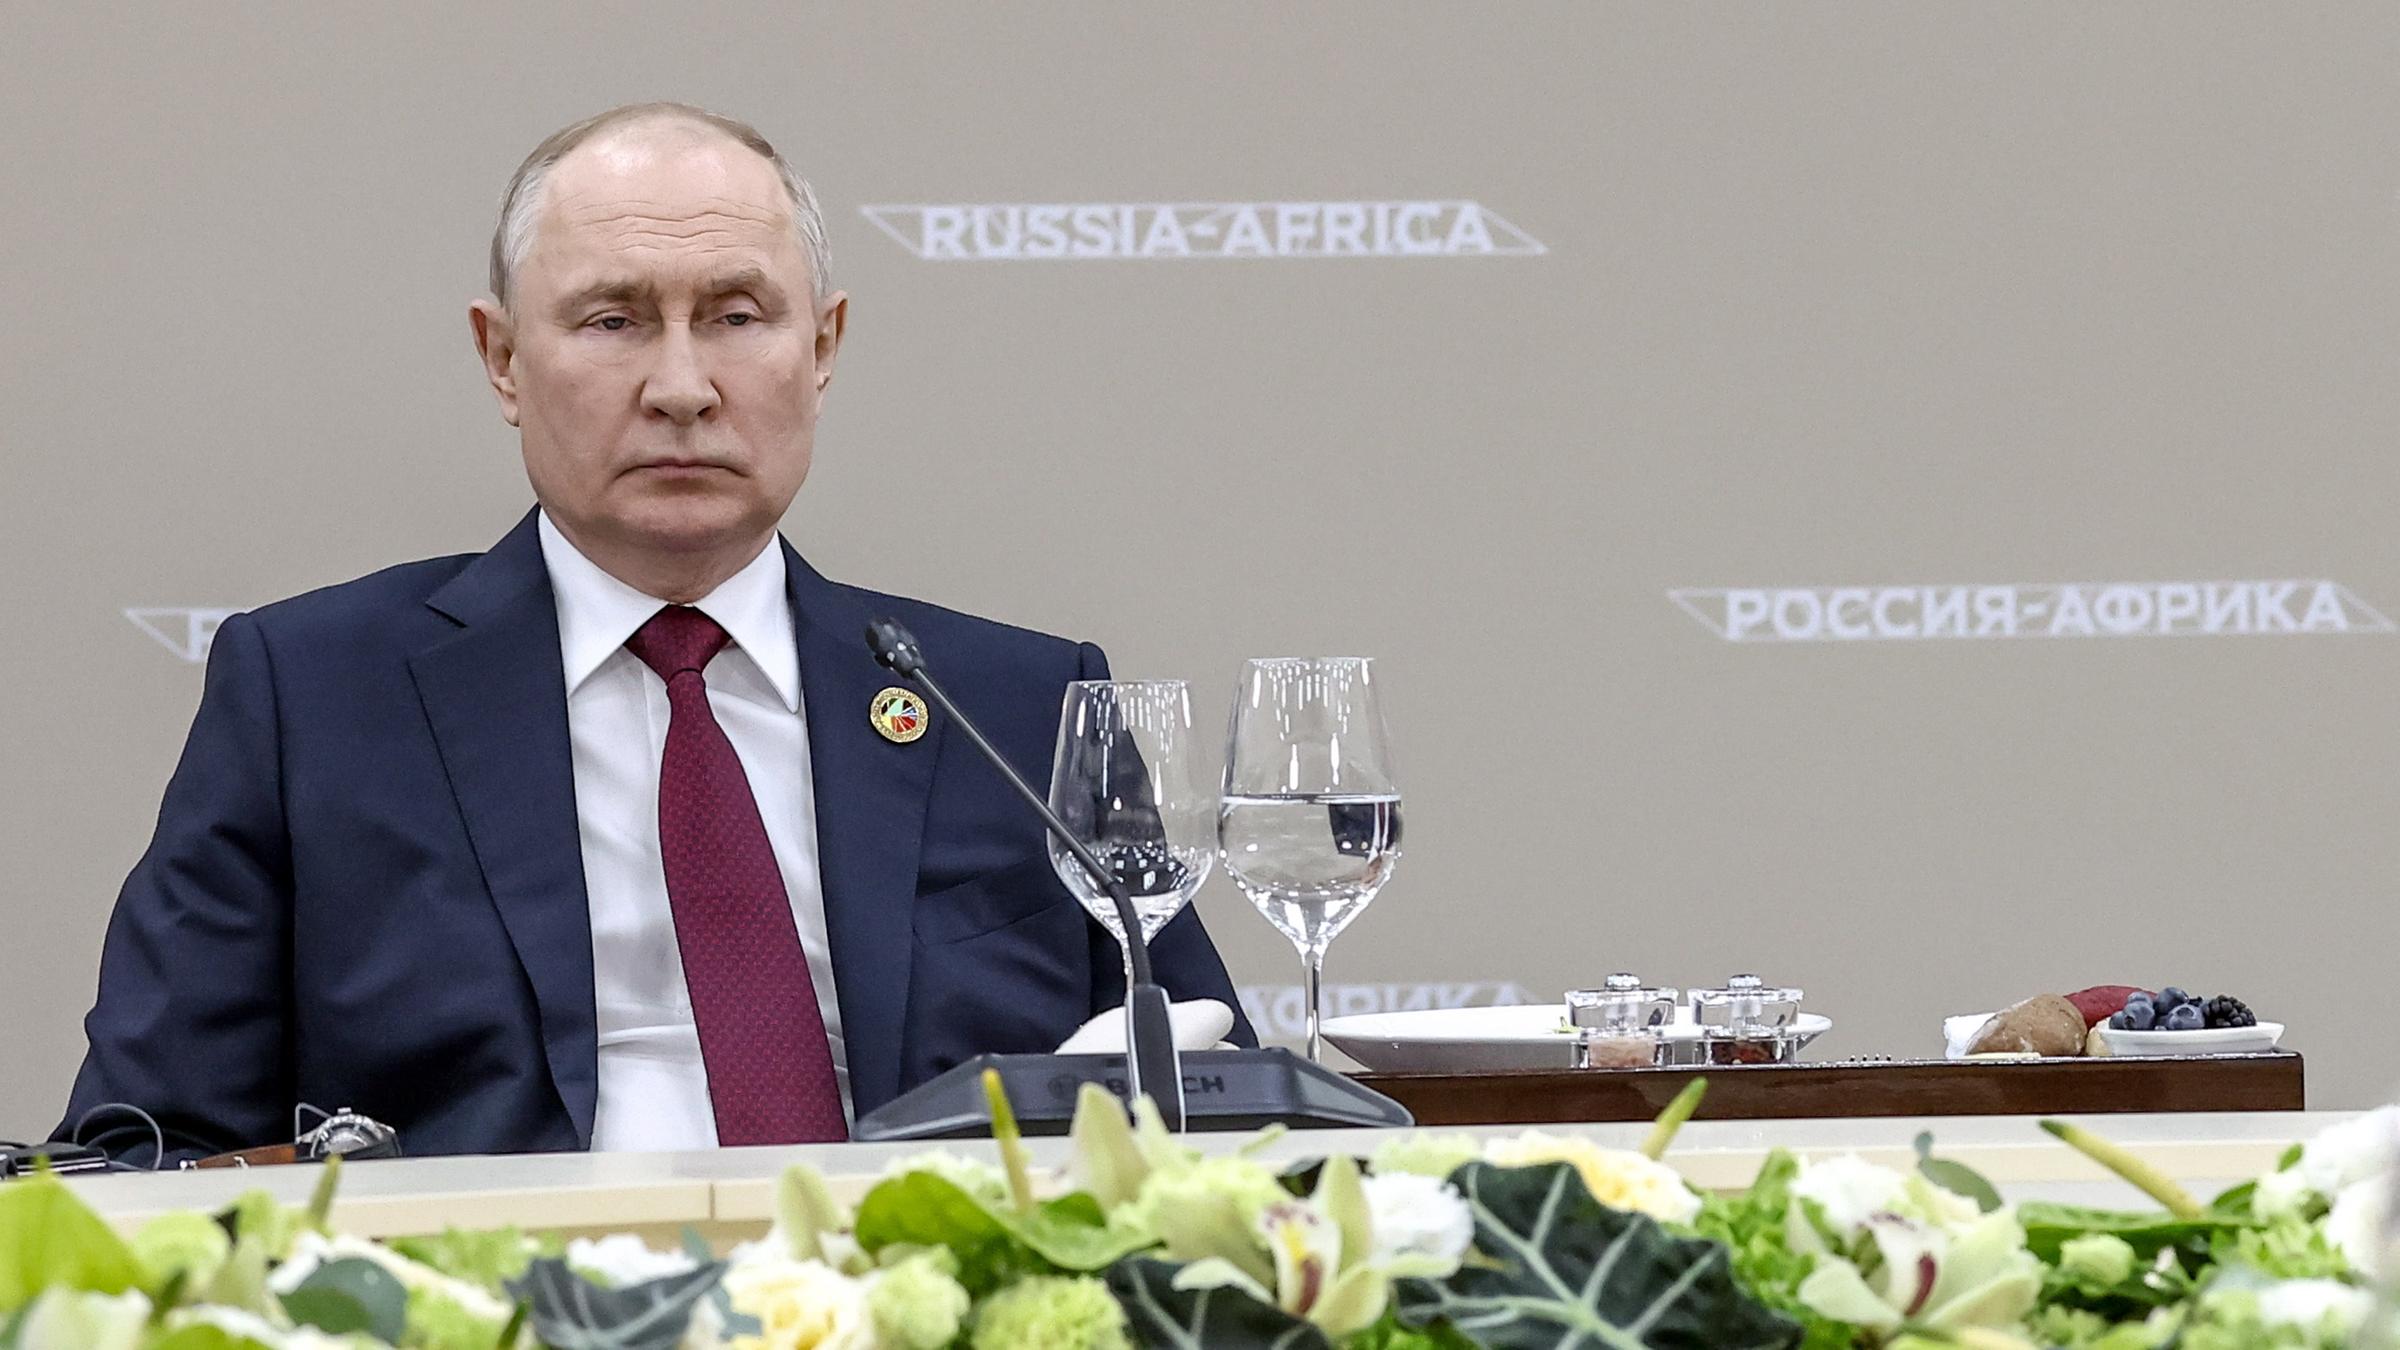 Zu sehen ist Präsident Putin an einem Konferenztisch mit Blumen im Vordergrund.